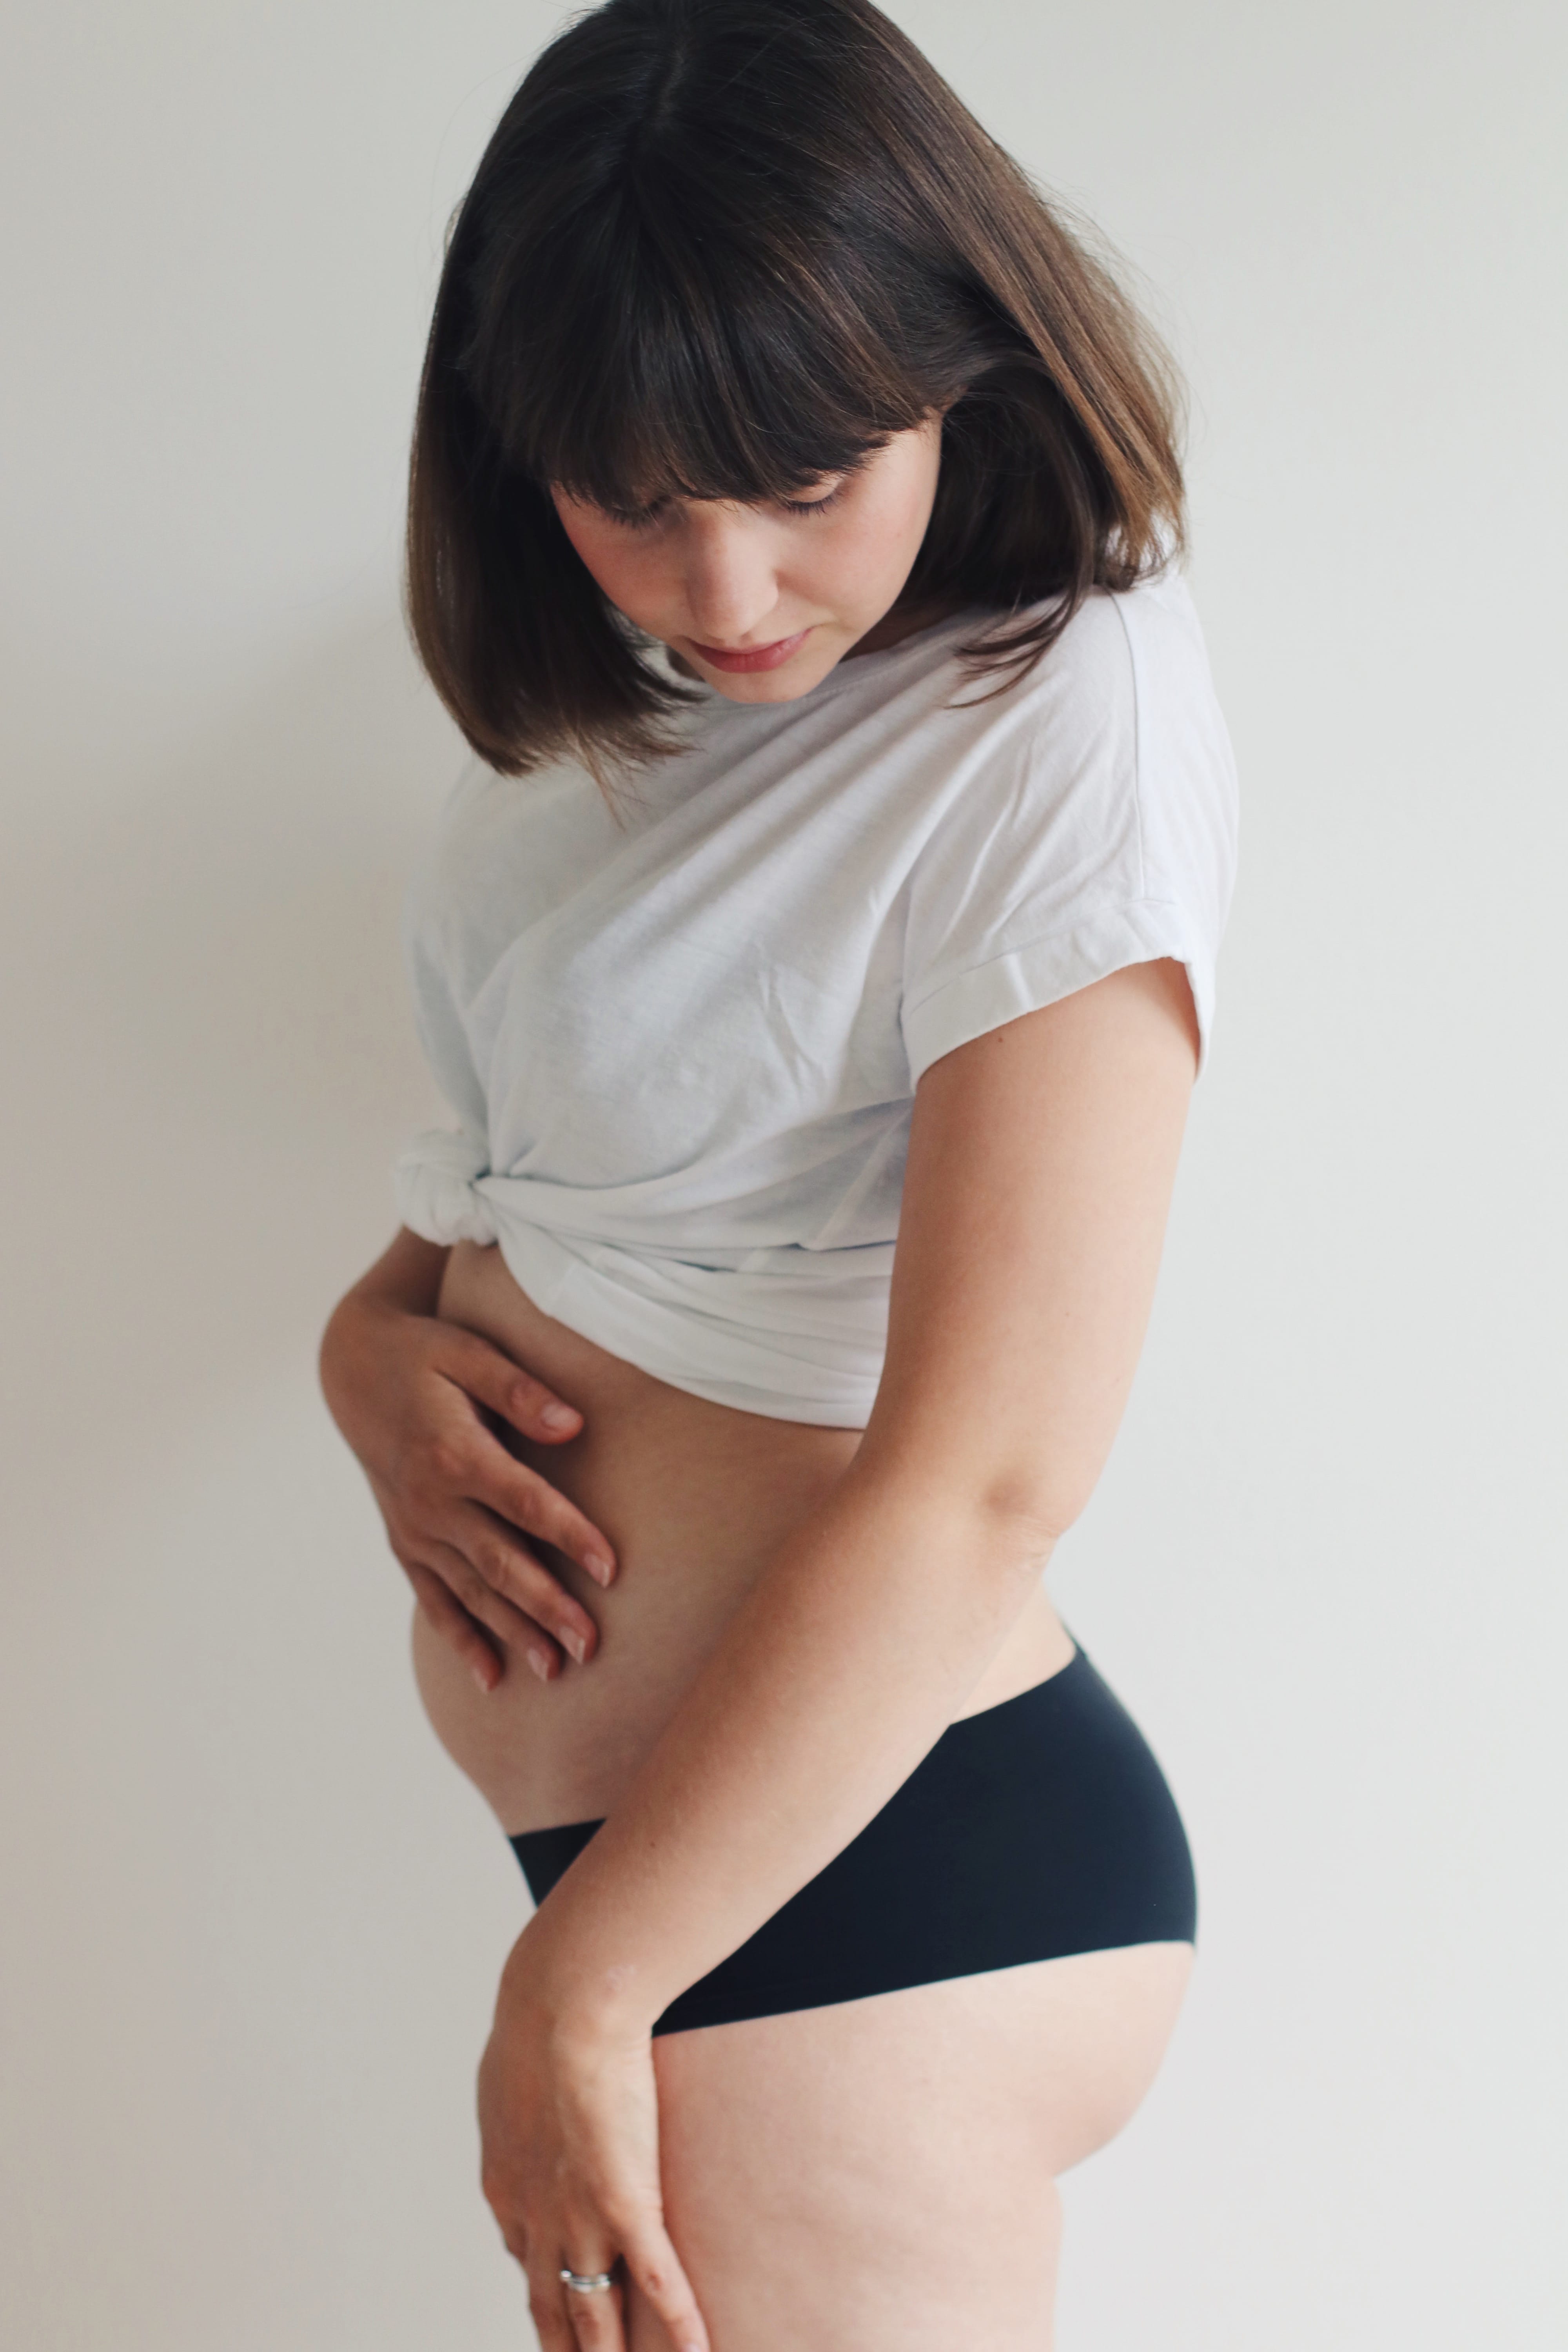 Dicker wird schwanger mein bin aber nicht bauch immer linsdsidvace: Bauch